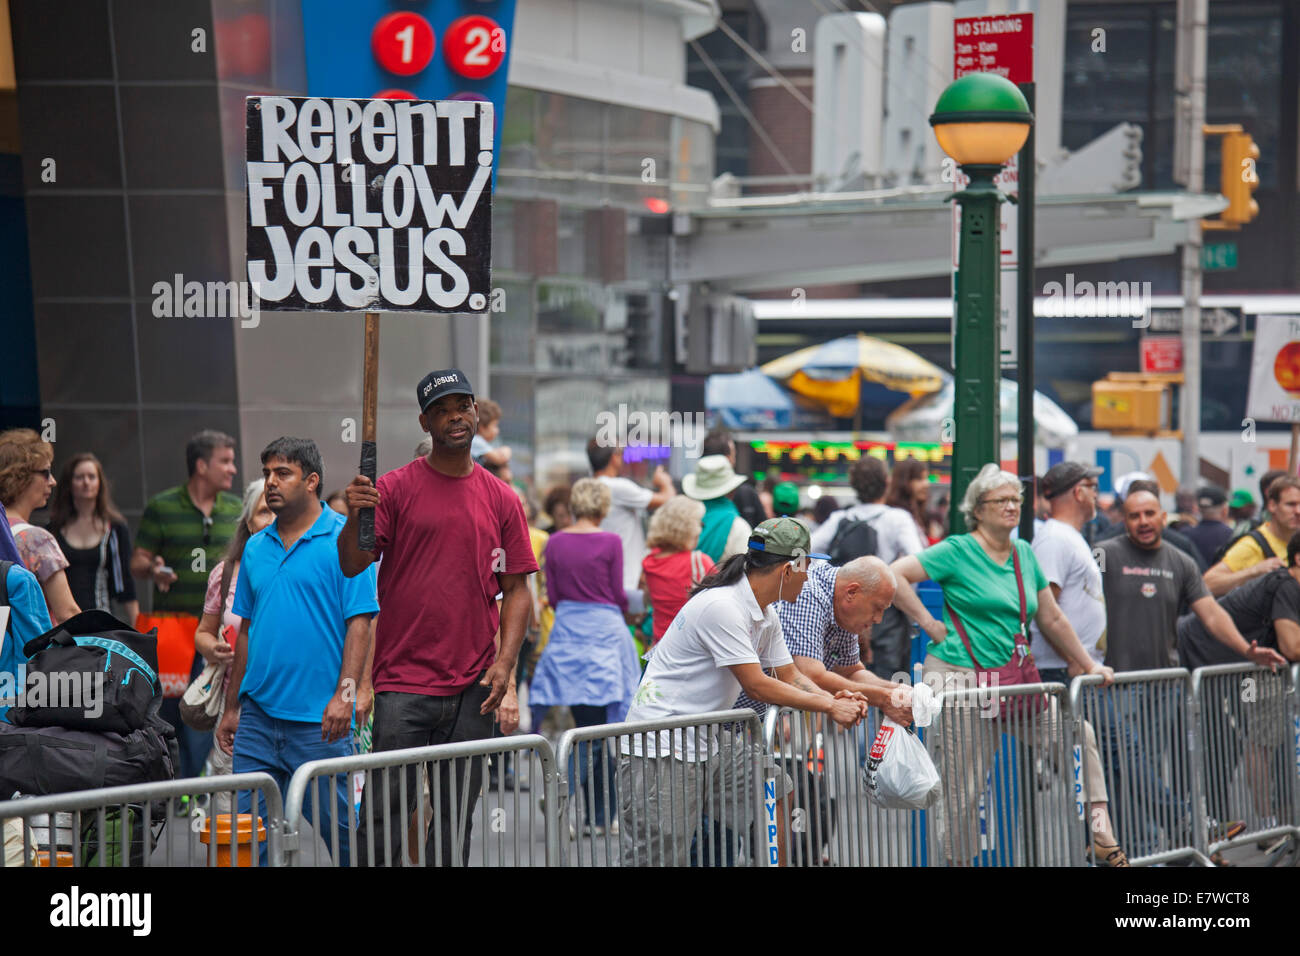 New York, New York - Un homme à Times Square porte un signe encourageant les gens à se repentir et à suivre Jésus. Banque D'Images